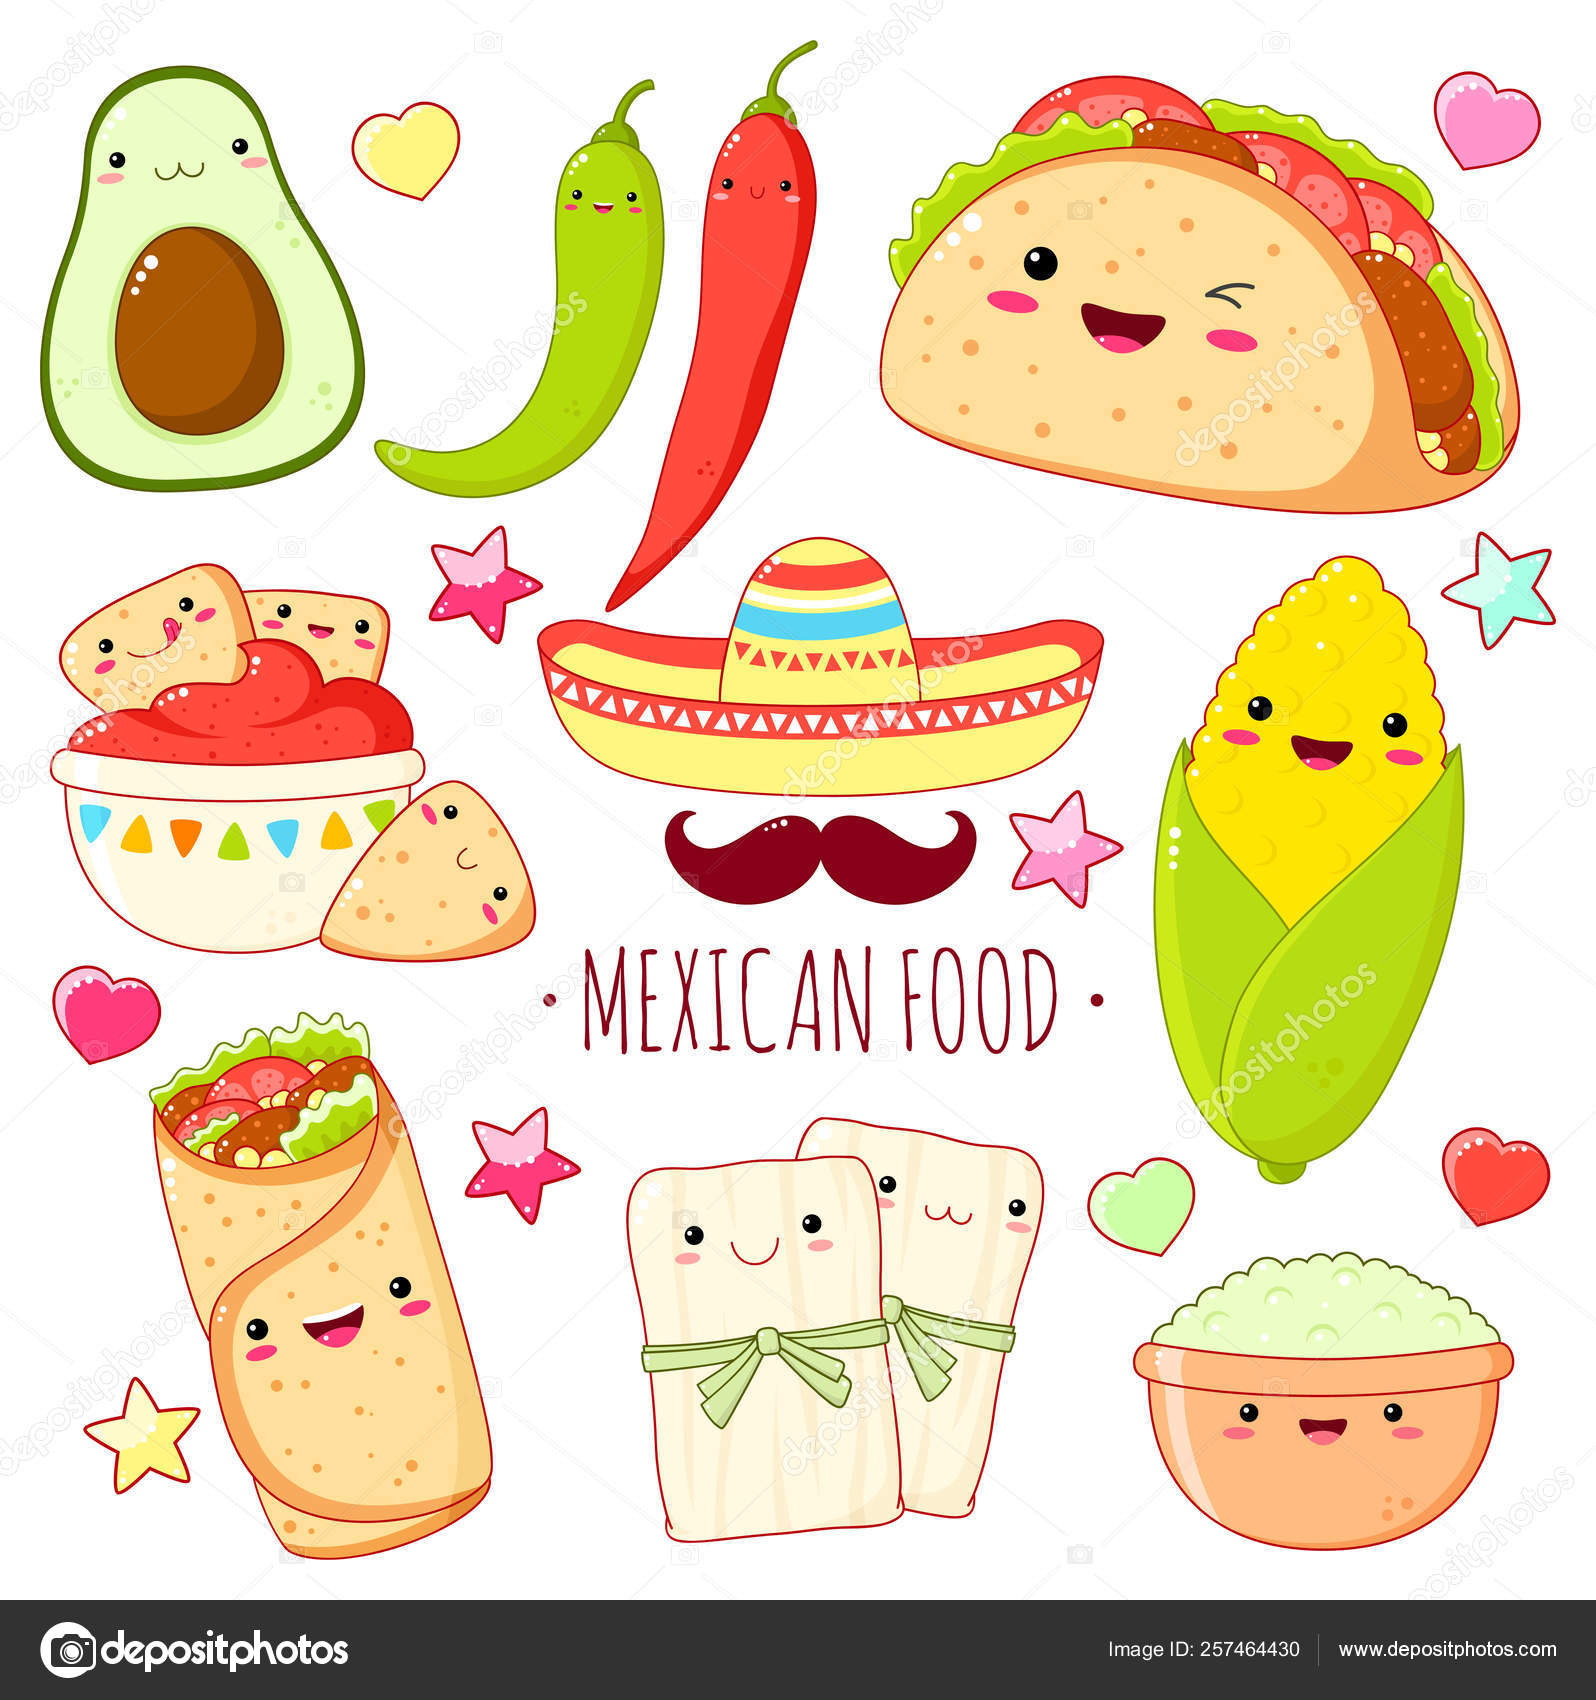 34 ilustraciones de stock de Tostadas mexicana | Depositphotos®